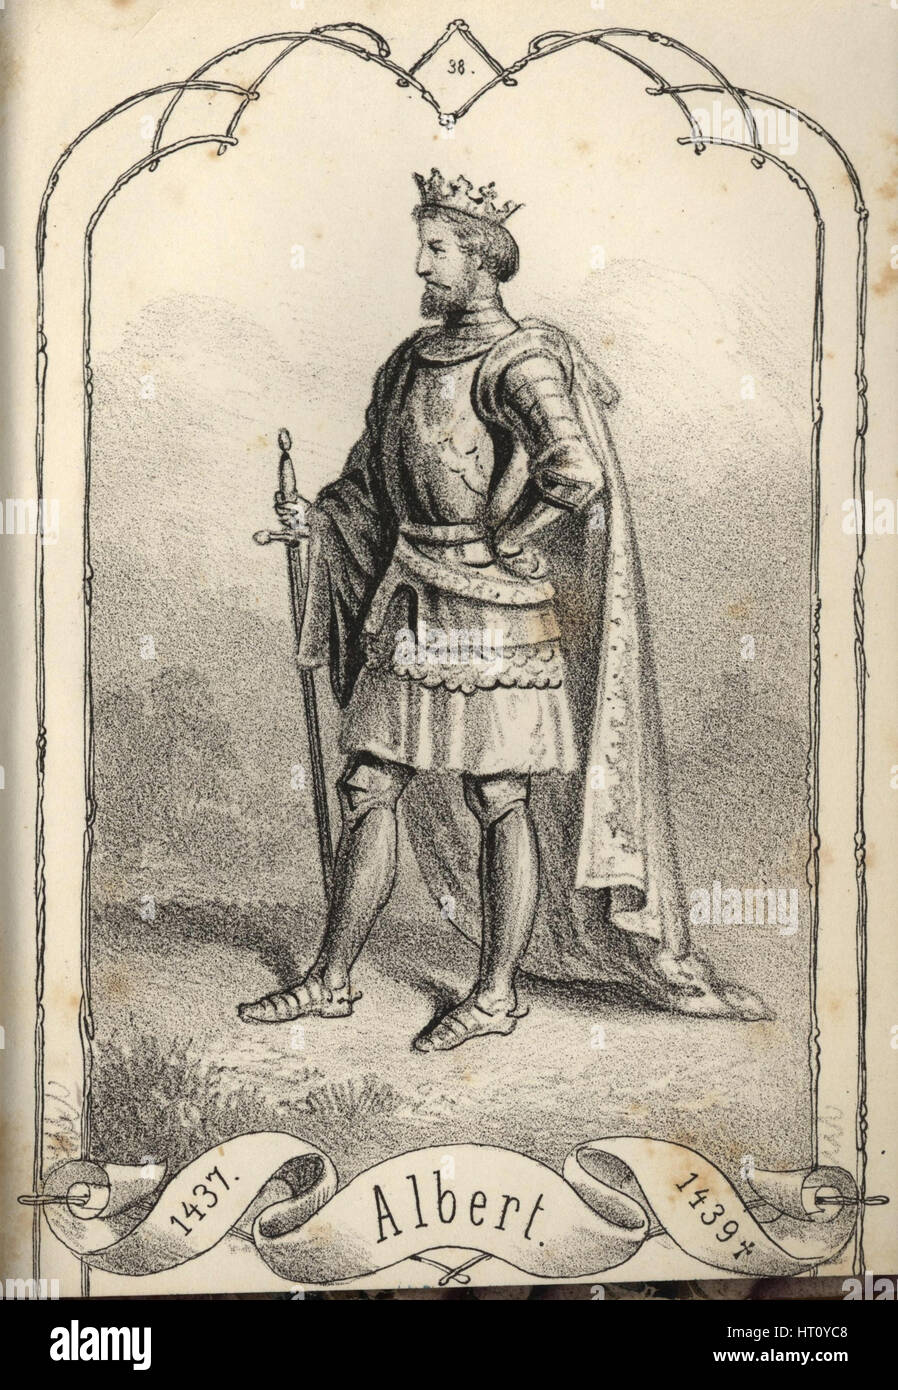 Albert der großmütige (1397-1439), König von Ungarn und Kroatien. Künstler: Vizkelety, Béla (1825-1864) Stockfoto